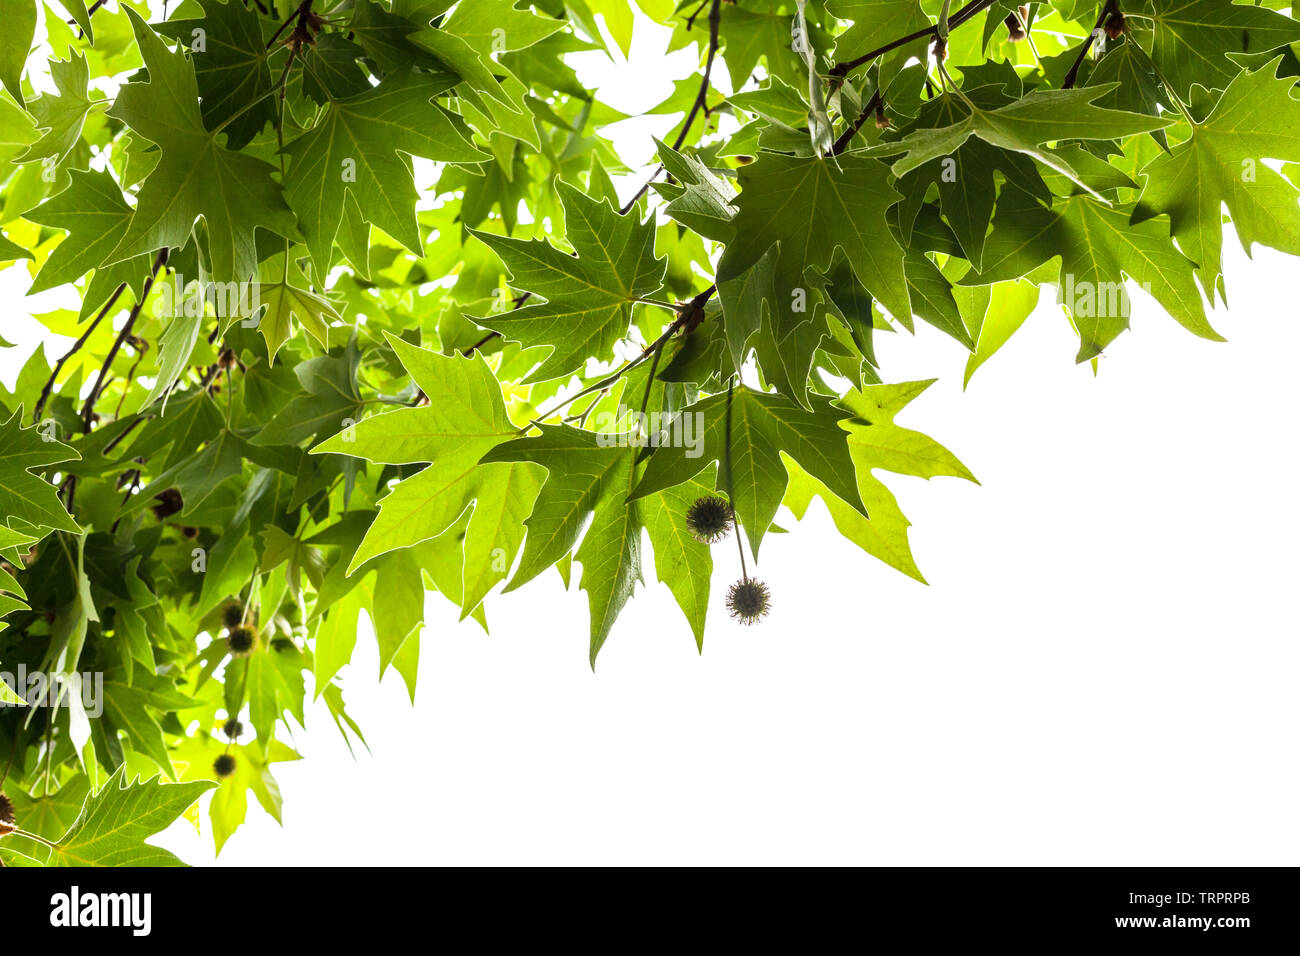 Les feuilles vertes et les fruits d'un arbre plan Londres isolé sur fond blanc Banque D'Images